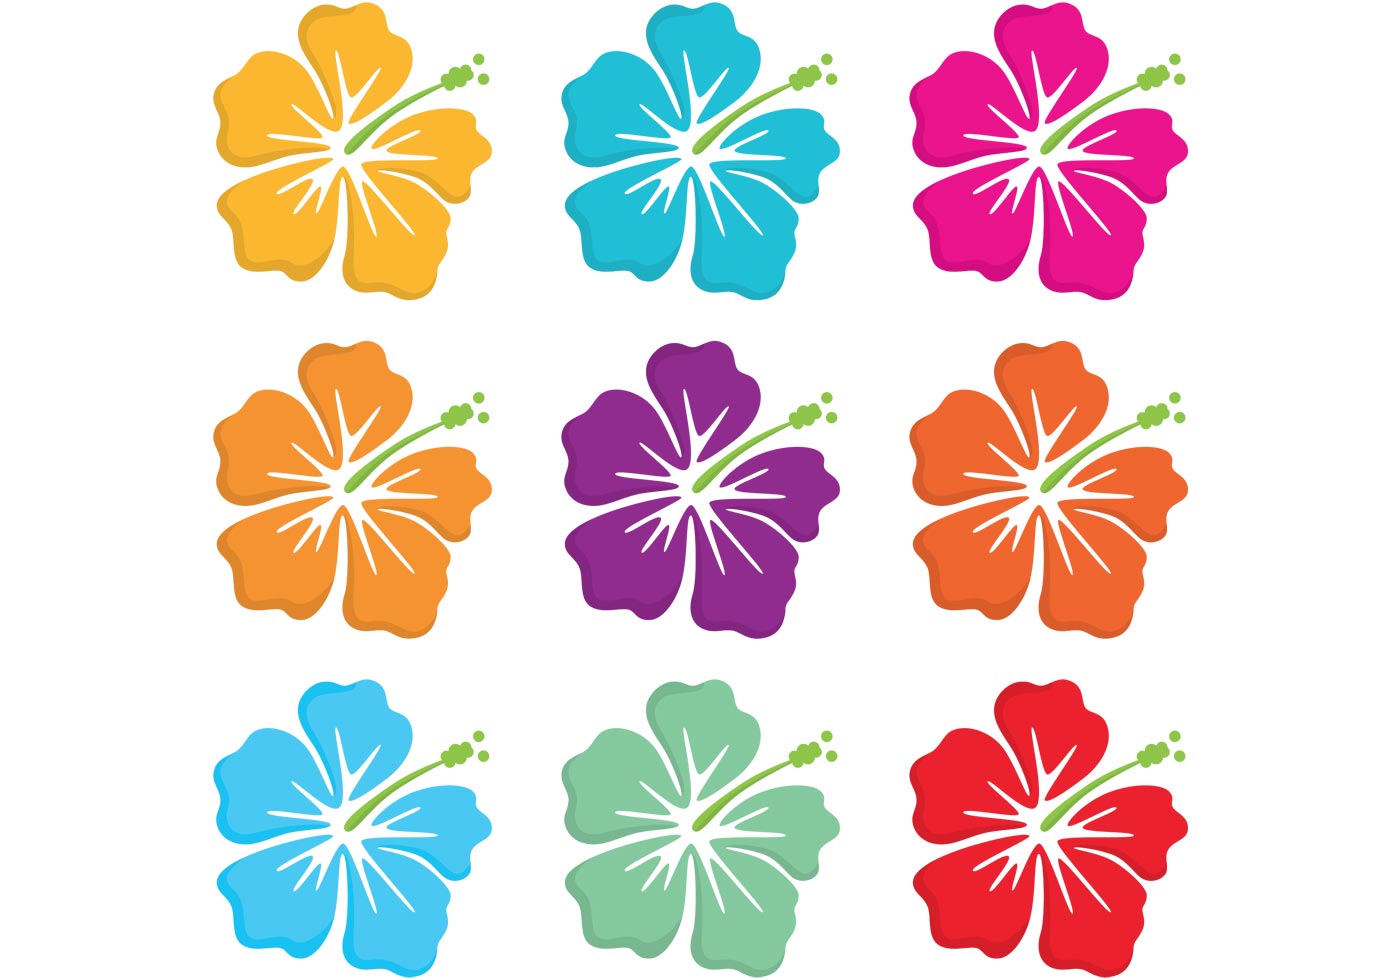 Hawaiian Polynesian Flower Vectors 82477 - Download Free ...